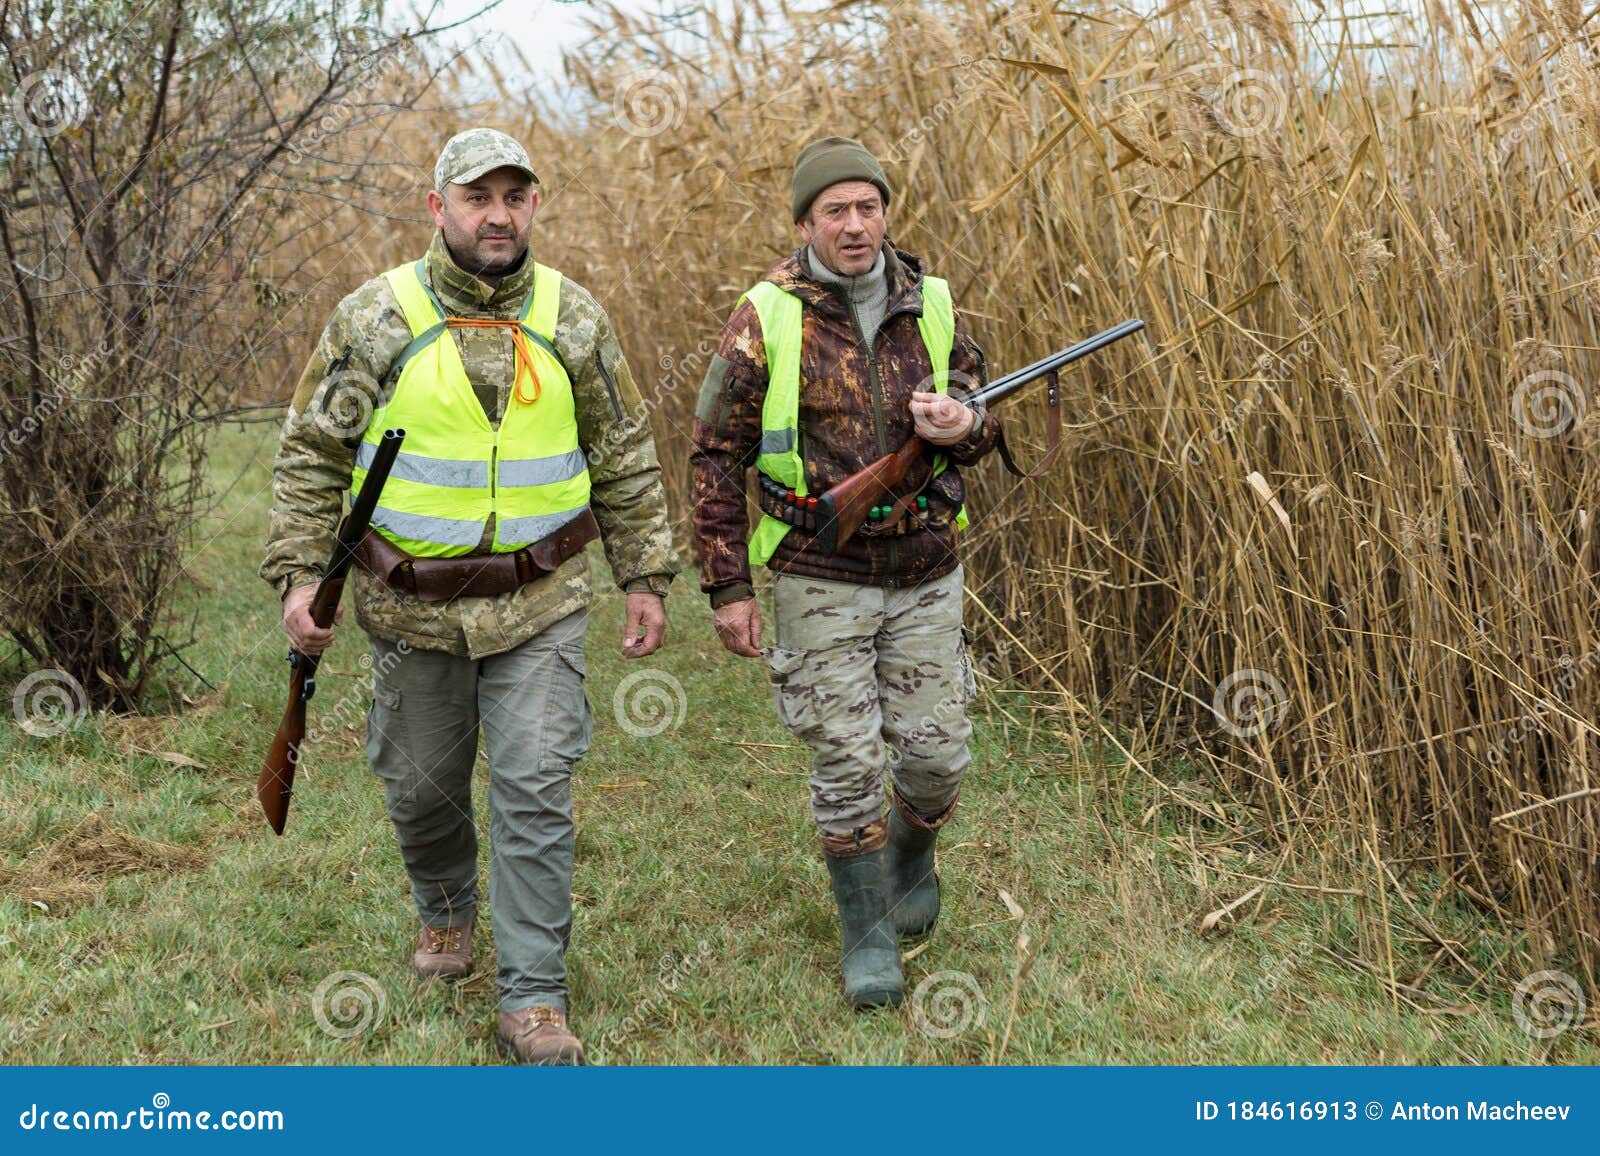 Periodo de caza, temporada de otoño abierta. un cazador con una pistola en  sus manos con ropa de caza en el bosque de otoño en busca de un trofeo. un  hombre está